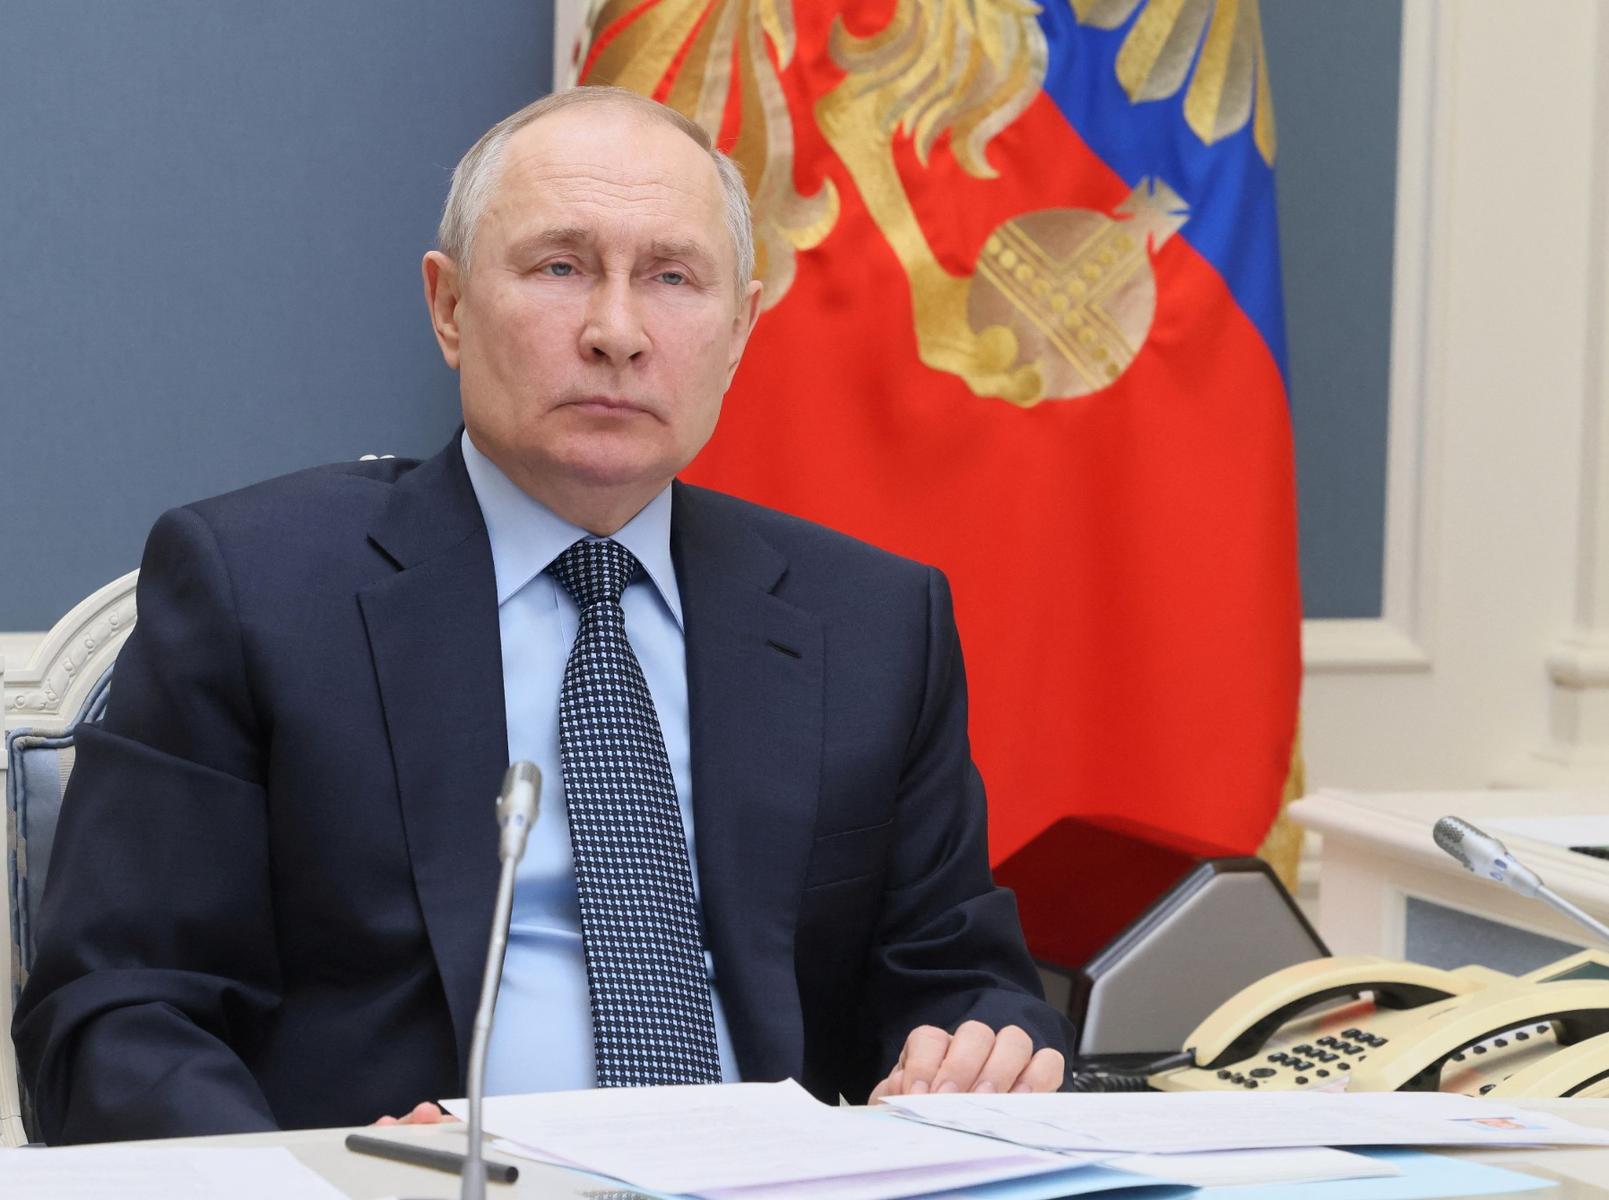 Ο Β. Πούτιν θα είναι υποψήφιος στις προεδρικές εκλογές του Μαρτίου